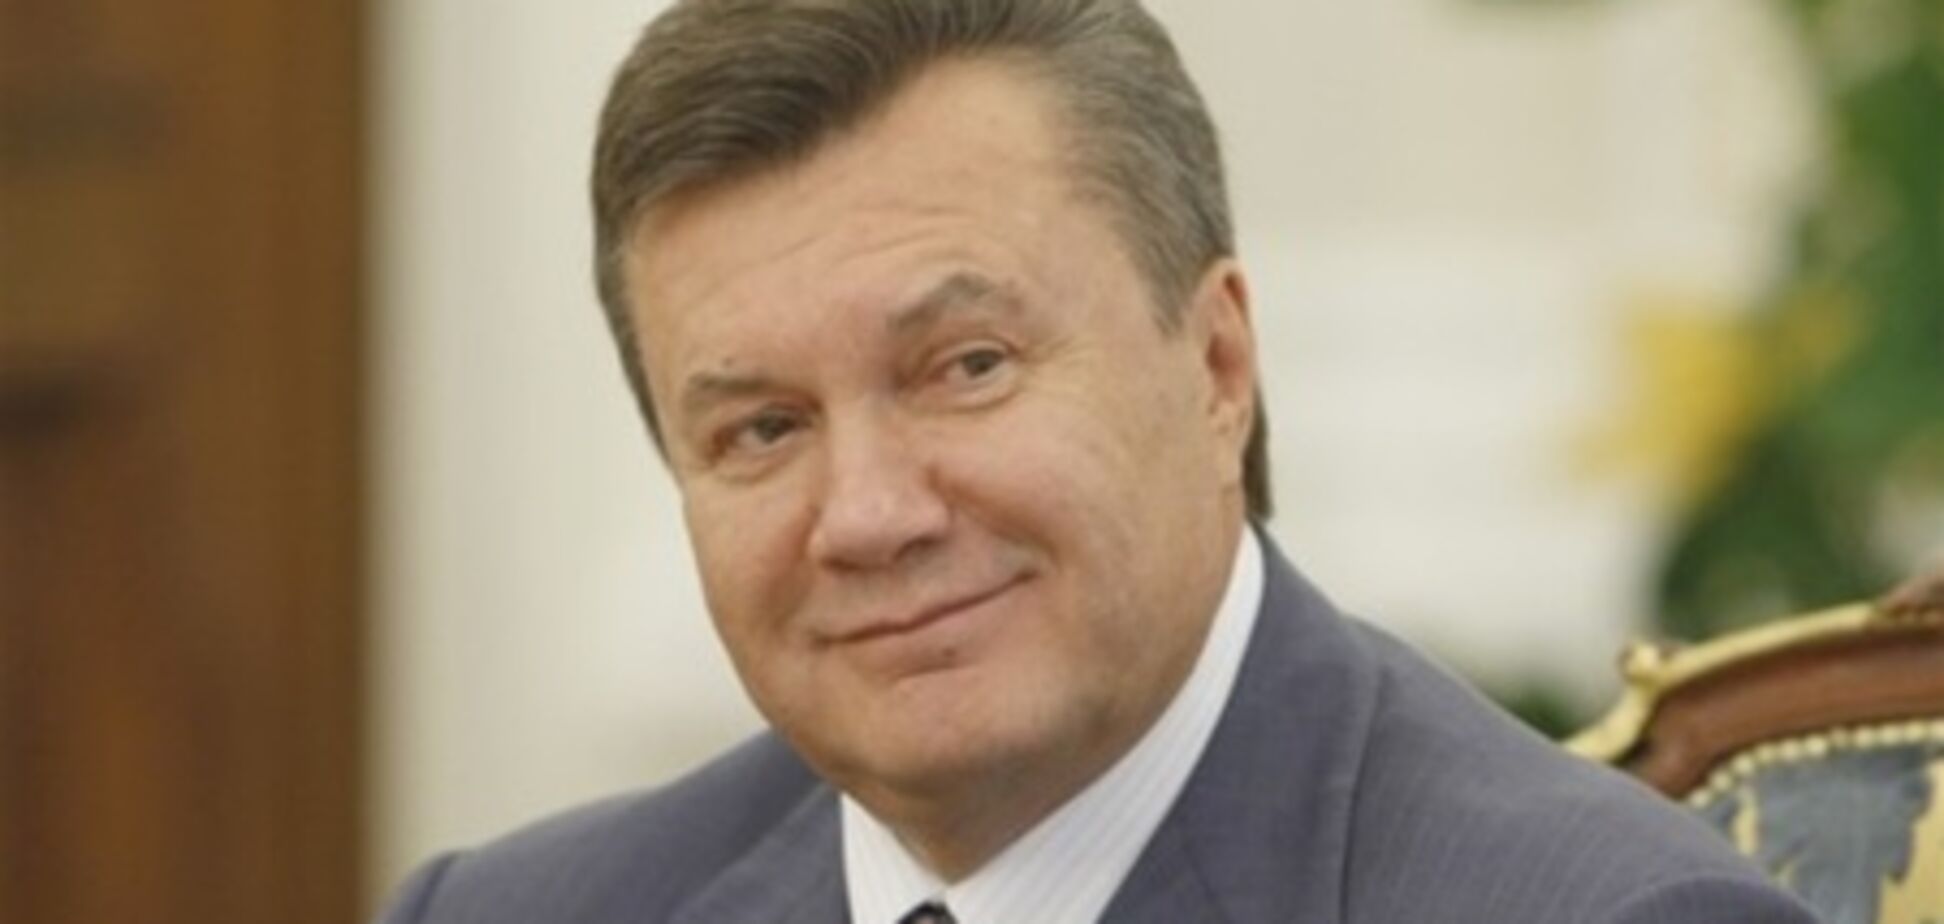 Експерти натякнули Януковичу, як завоювати підтримку на заході України 